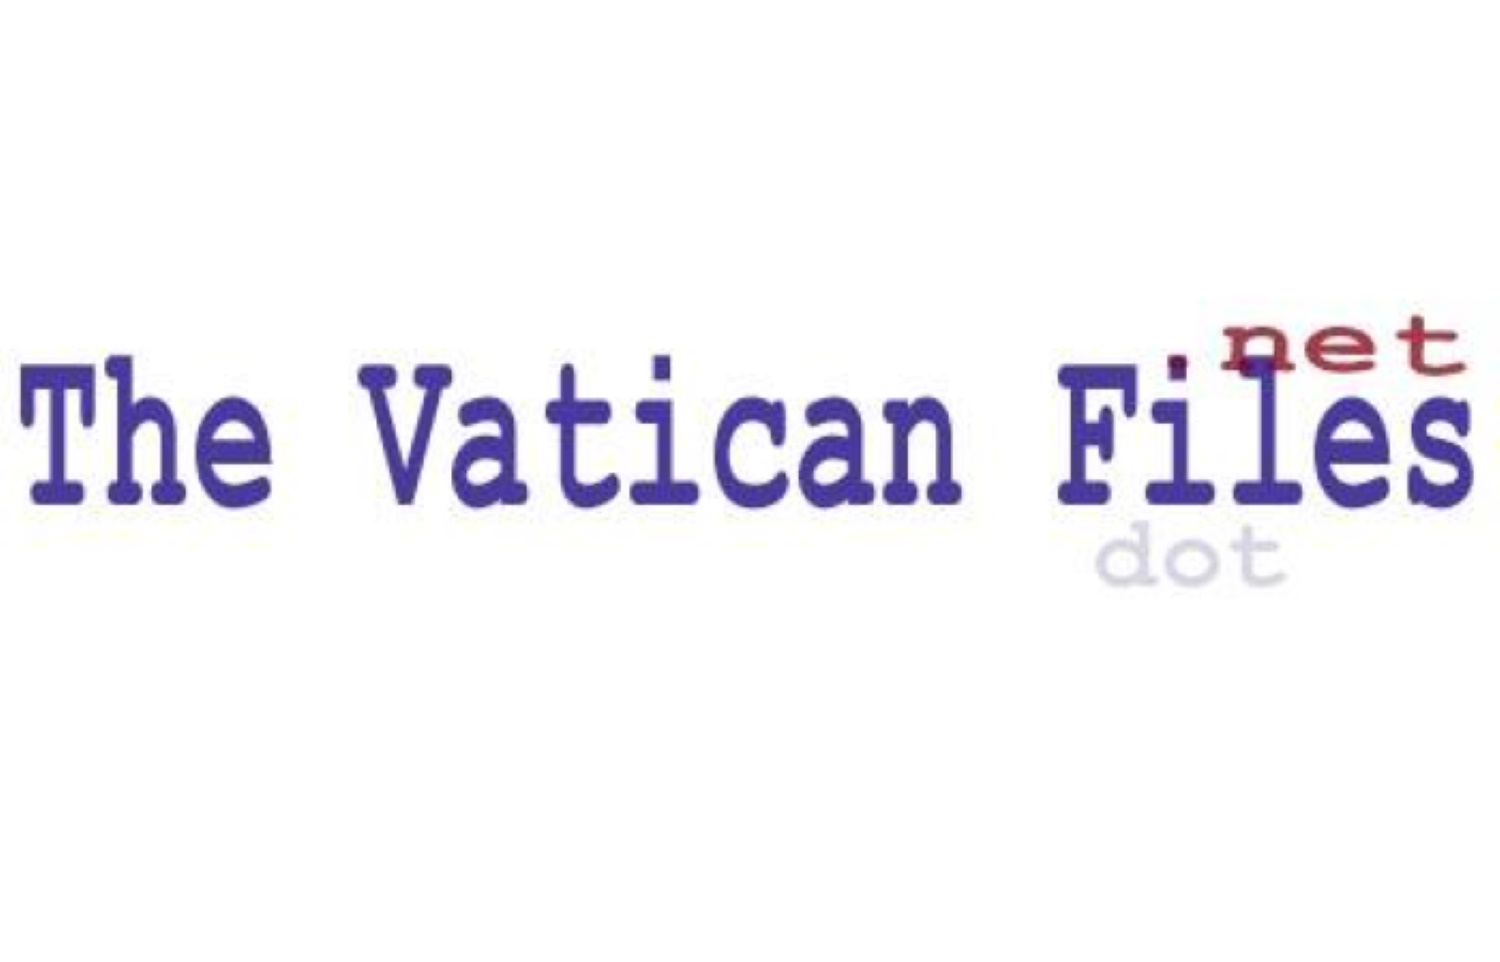 Il gesuita che invent l'elicottero-   THE VATICAN FILES.NET  -      Storia - Testi - Documenti    